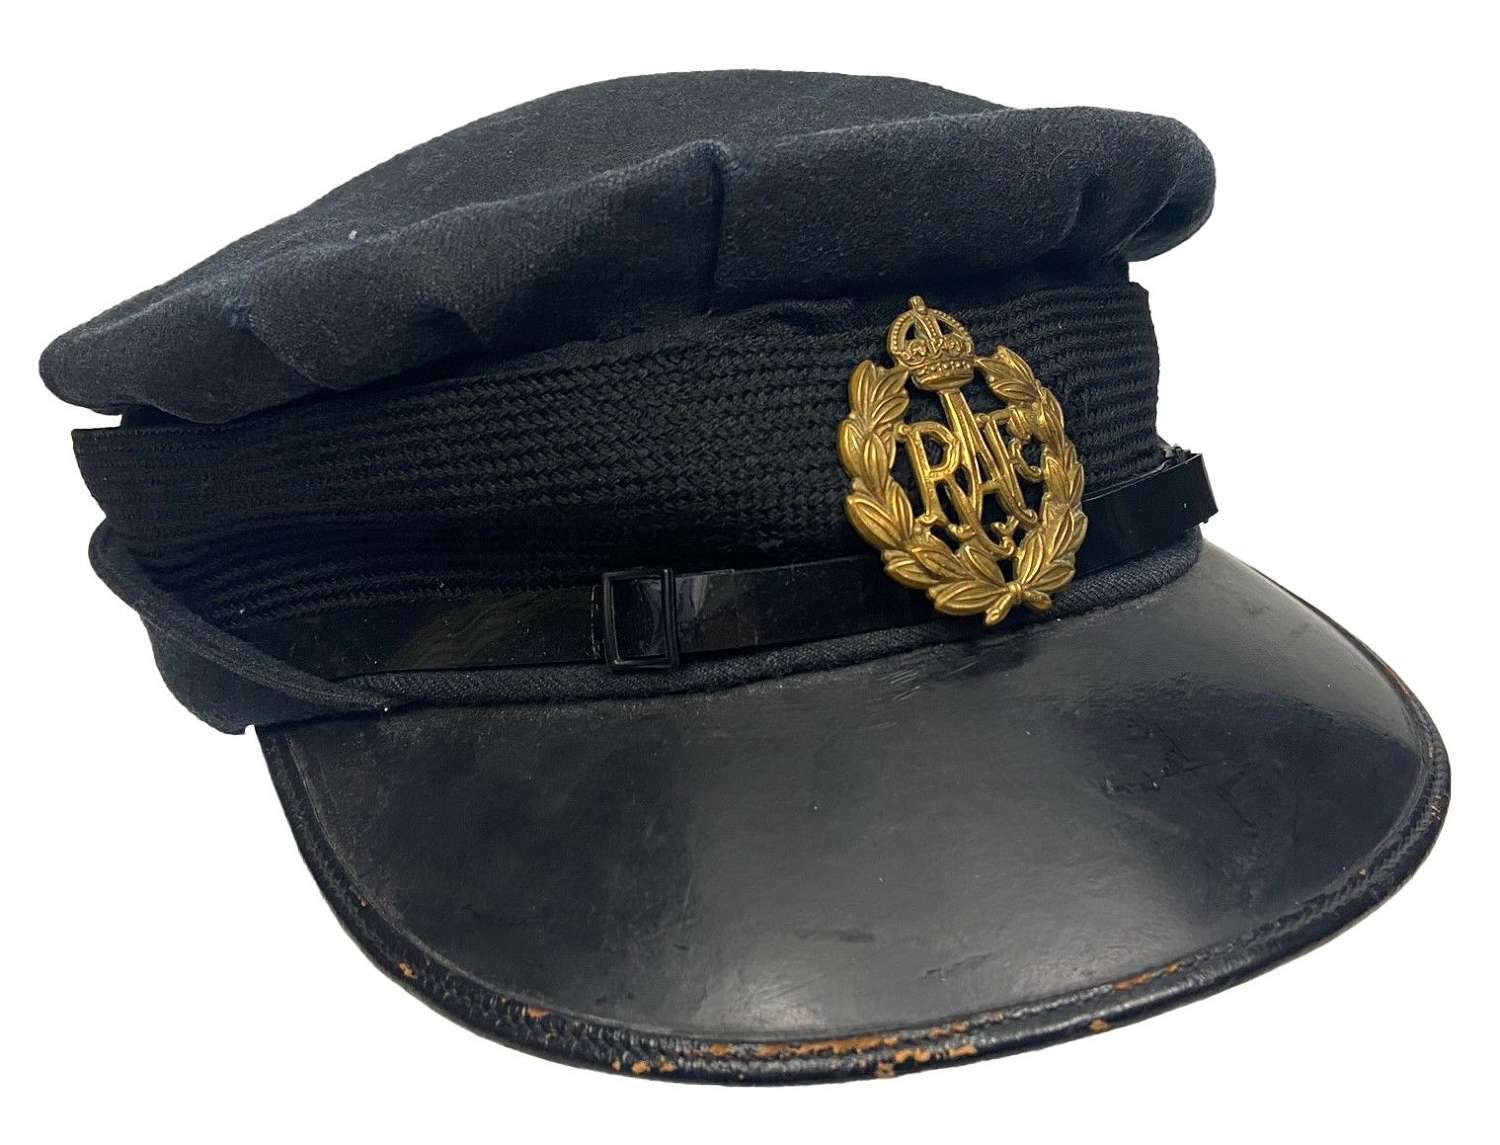 Original 1942 Dated W.A.A.F Peaked Cap